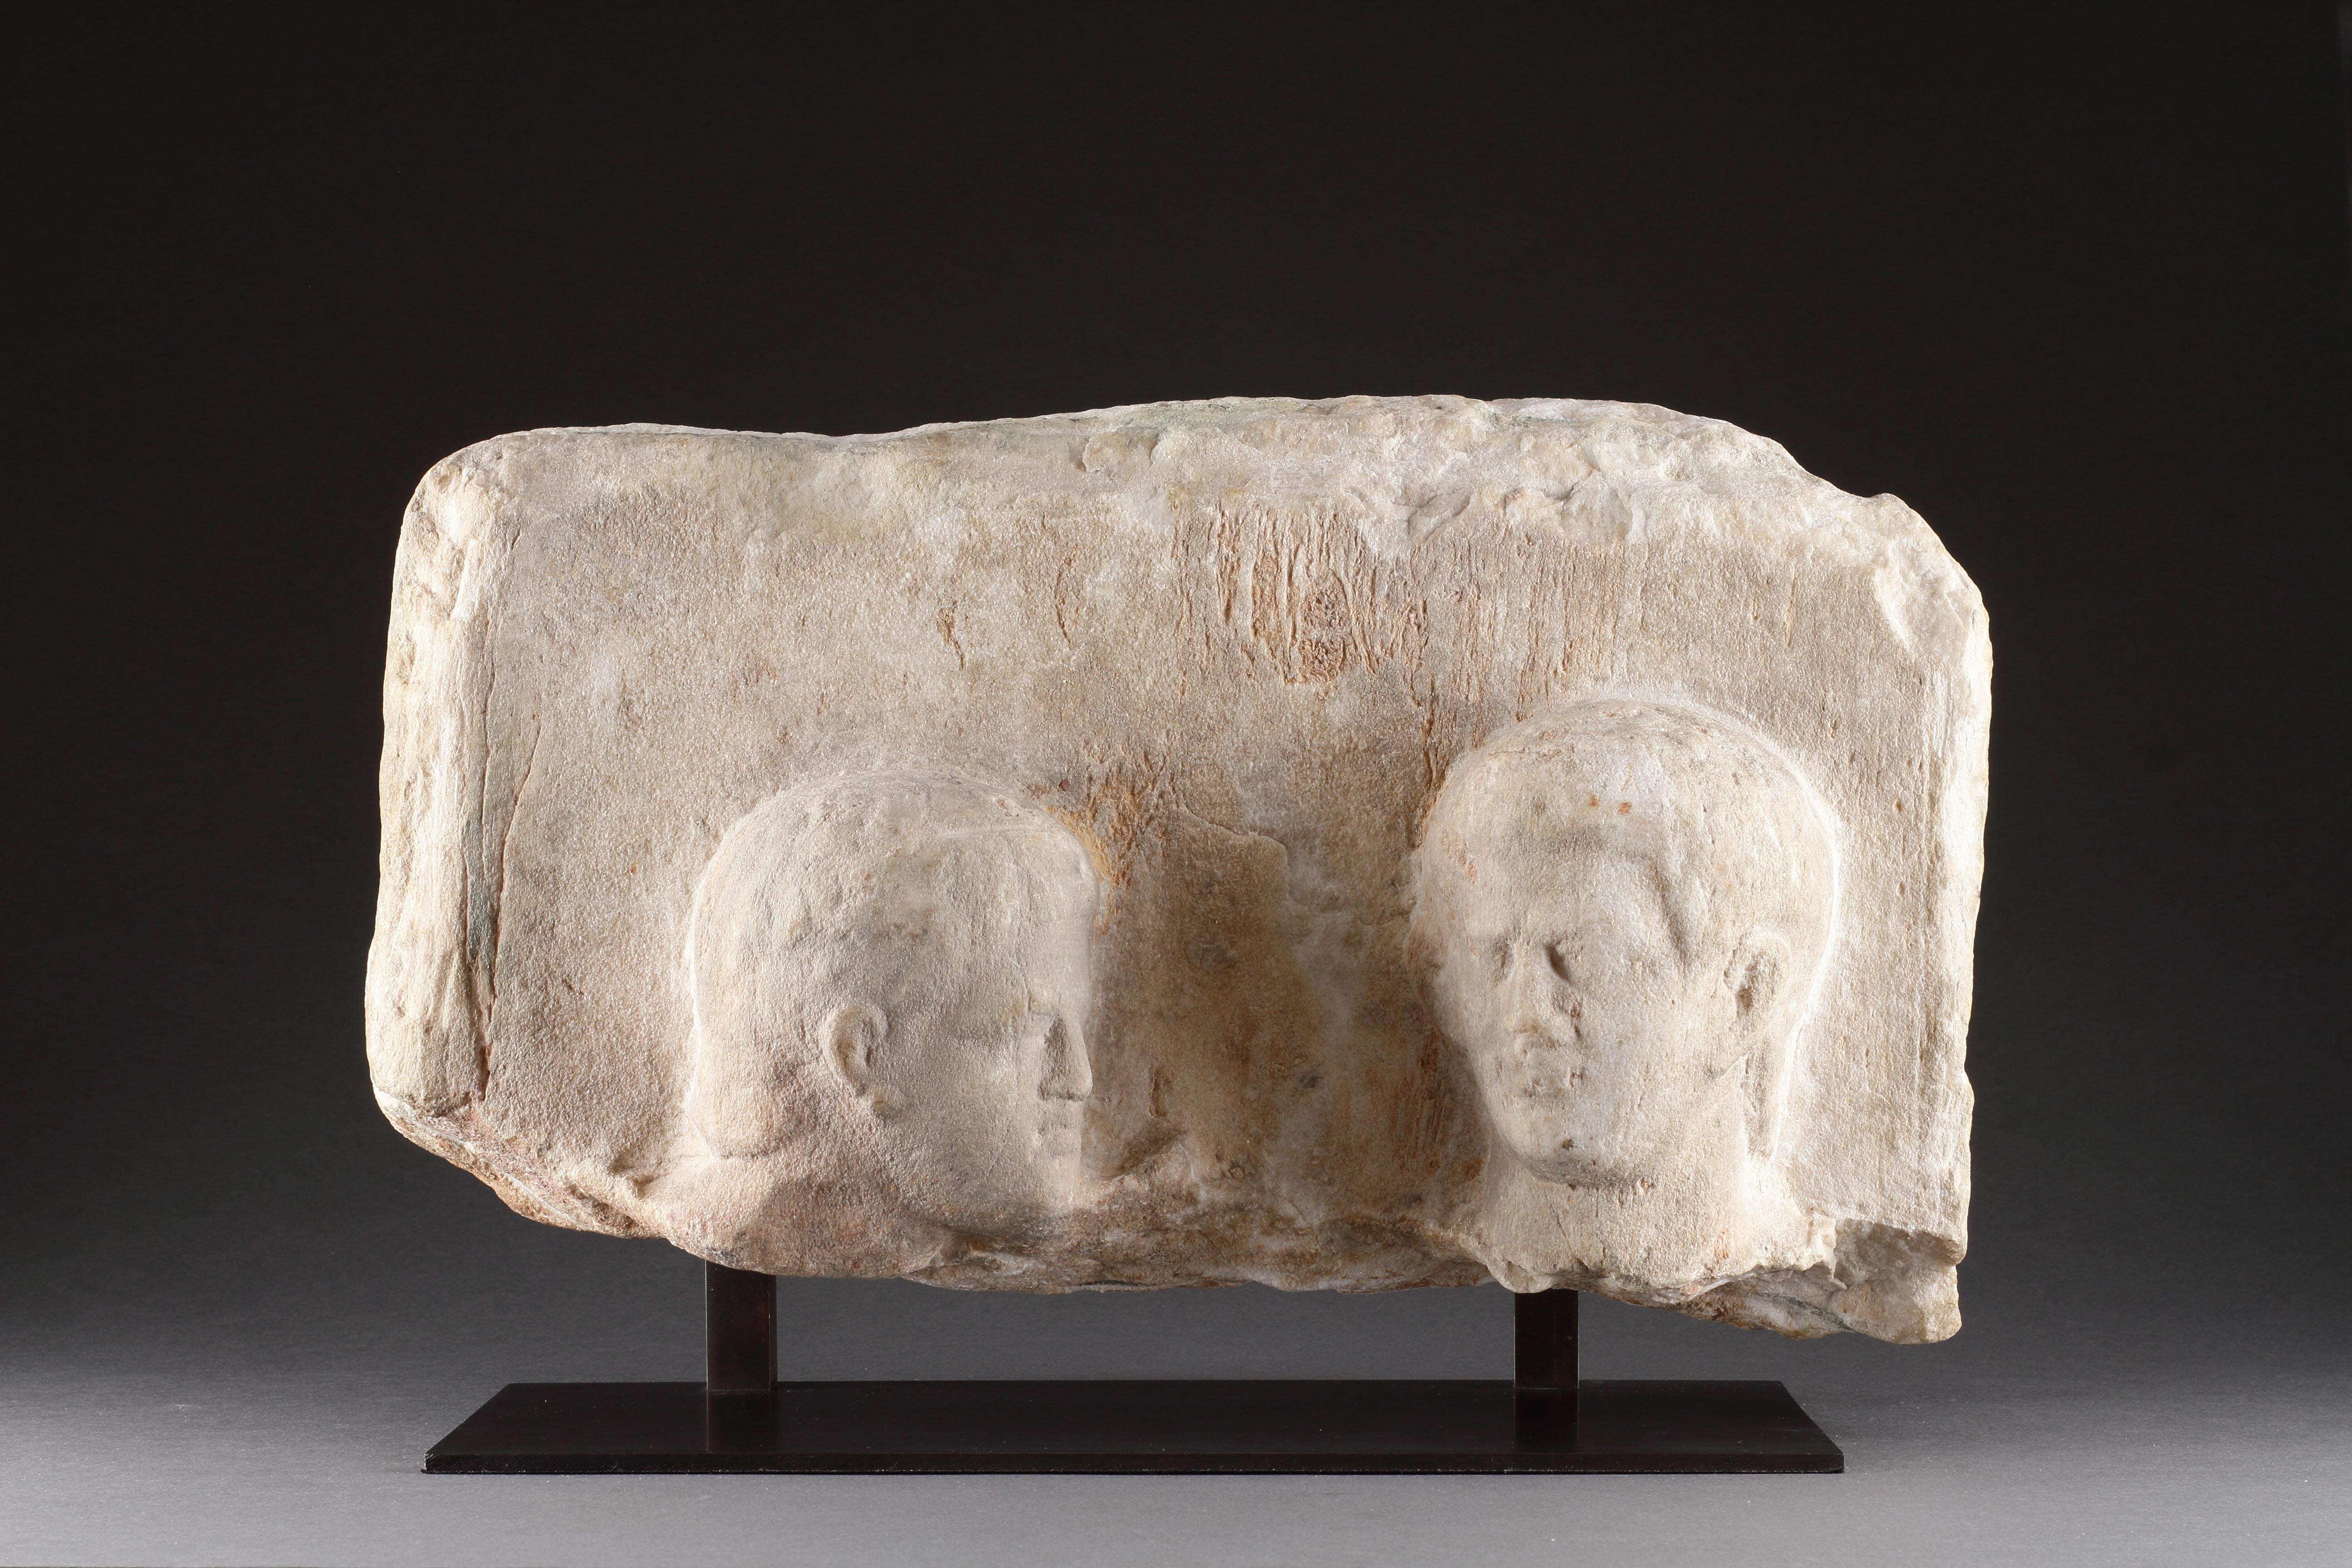 Stèle funéraire hellénistique en haut-relief avec deux têtes d'hommes 
Marbre 
Grec hellénistique 
Vers le 2e siècle avant J.-C.

Taille : 20,5 cm de haut, 38 cm de large, 11 cm de profondeur - 8 ins de haut, 15 ins de large, 4¼ ins de profondeur /